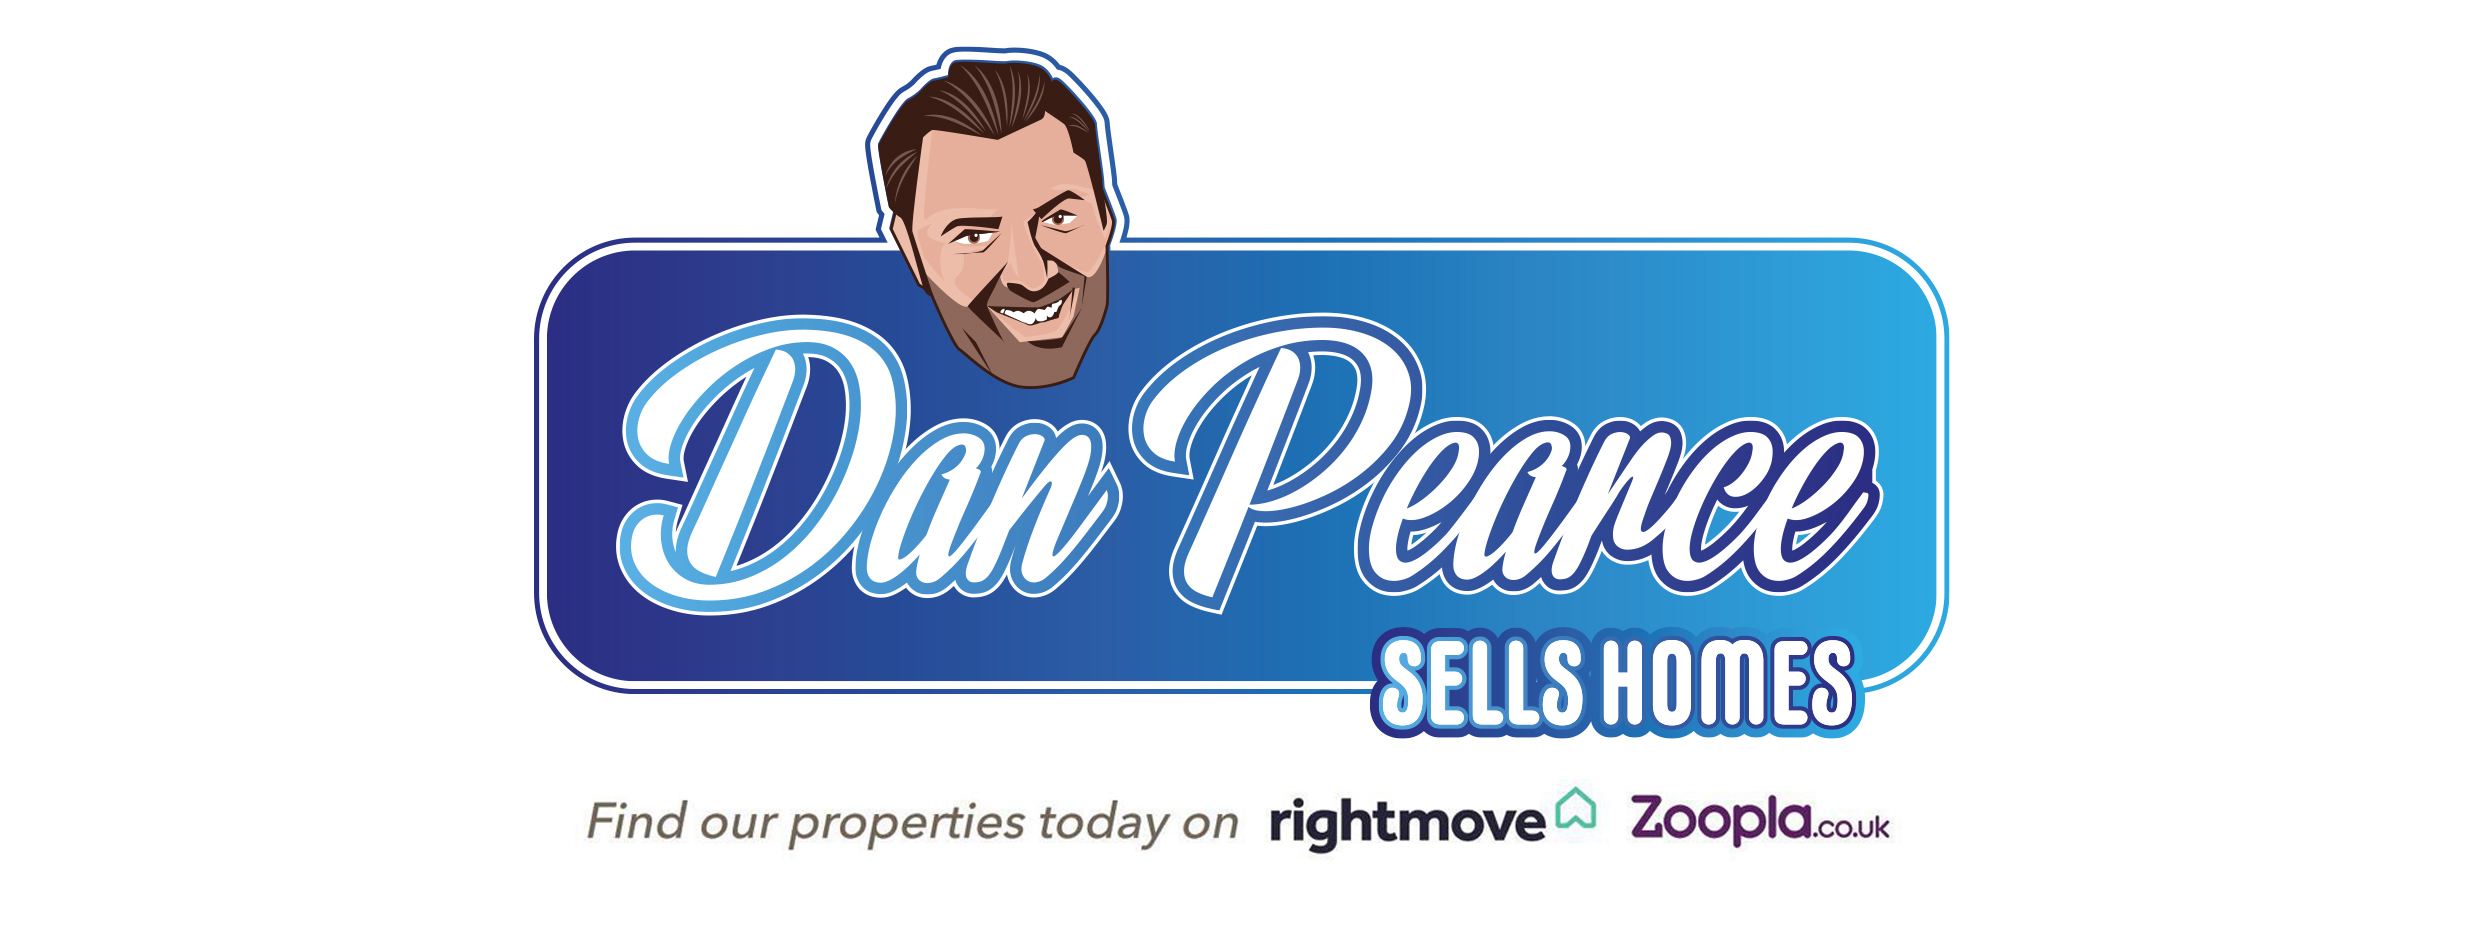 Dan Pearce Sells Homes estate agent Morley Leeds